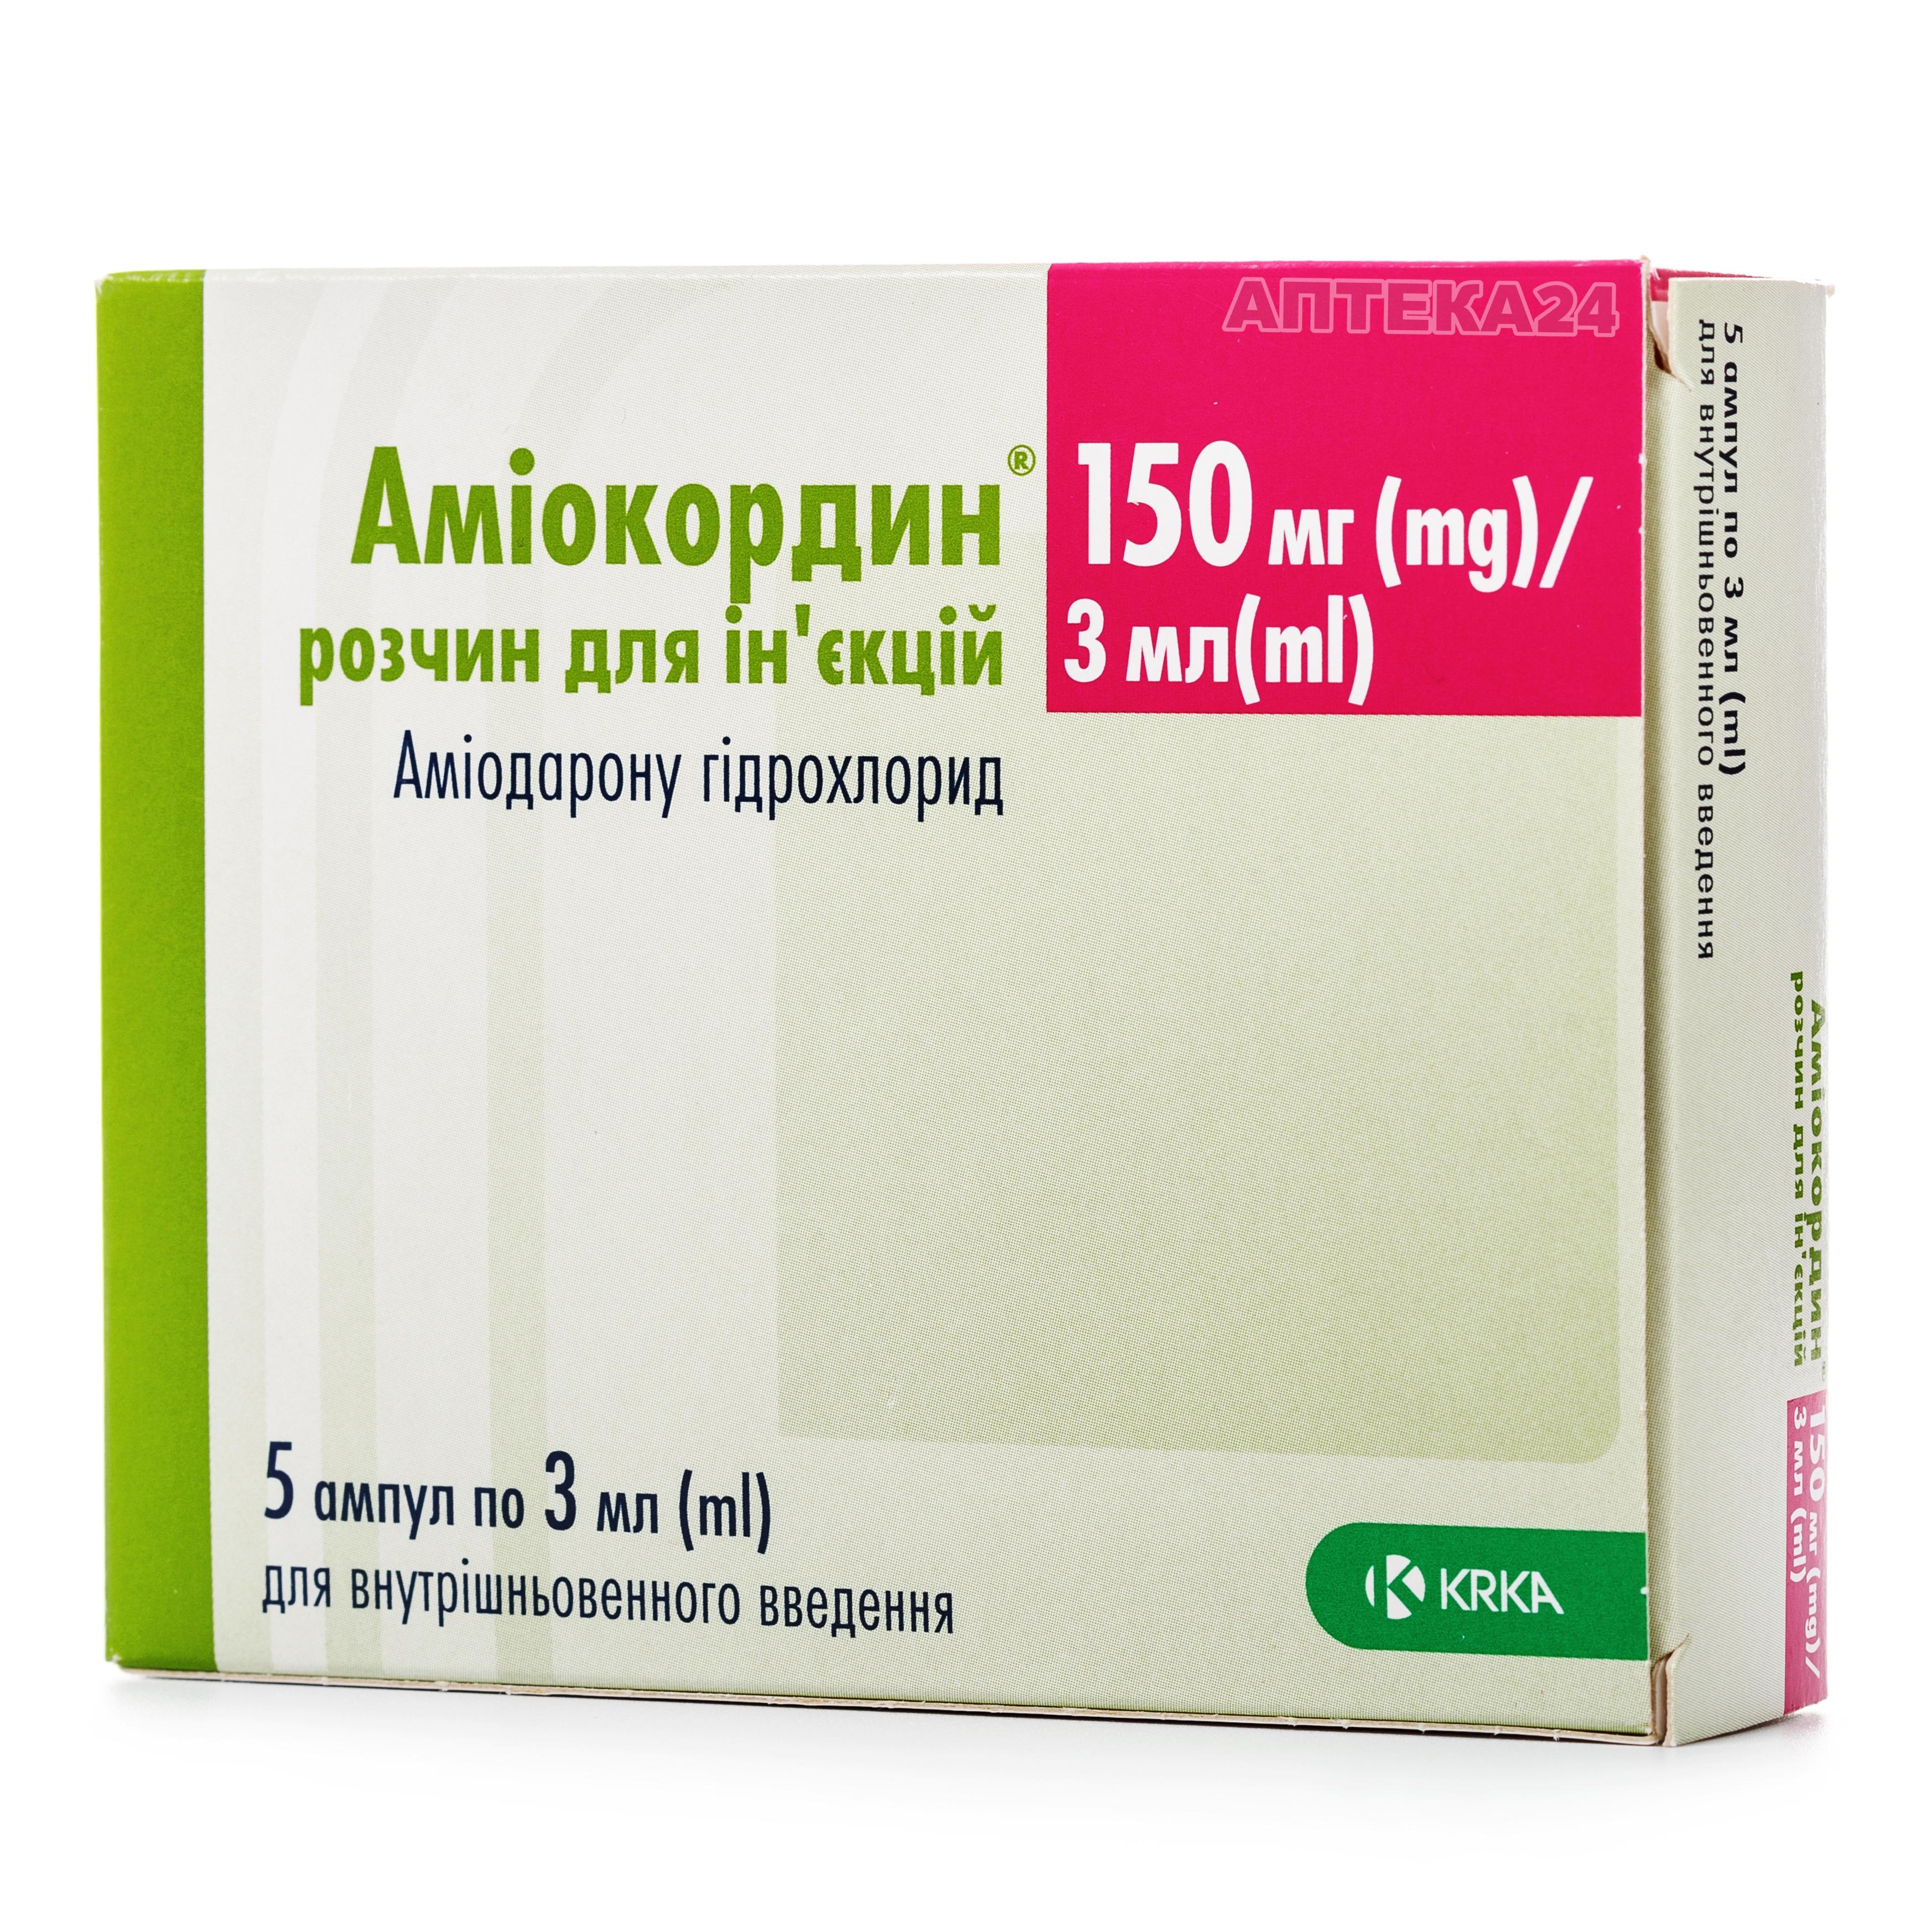 Честные отзывы о Амиокордин раствор для инъекций по 150 мг/3 мл, 5 .